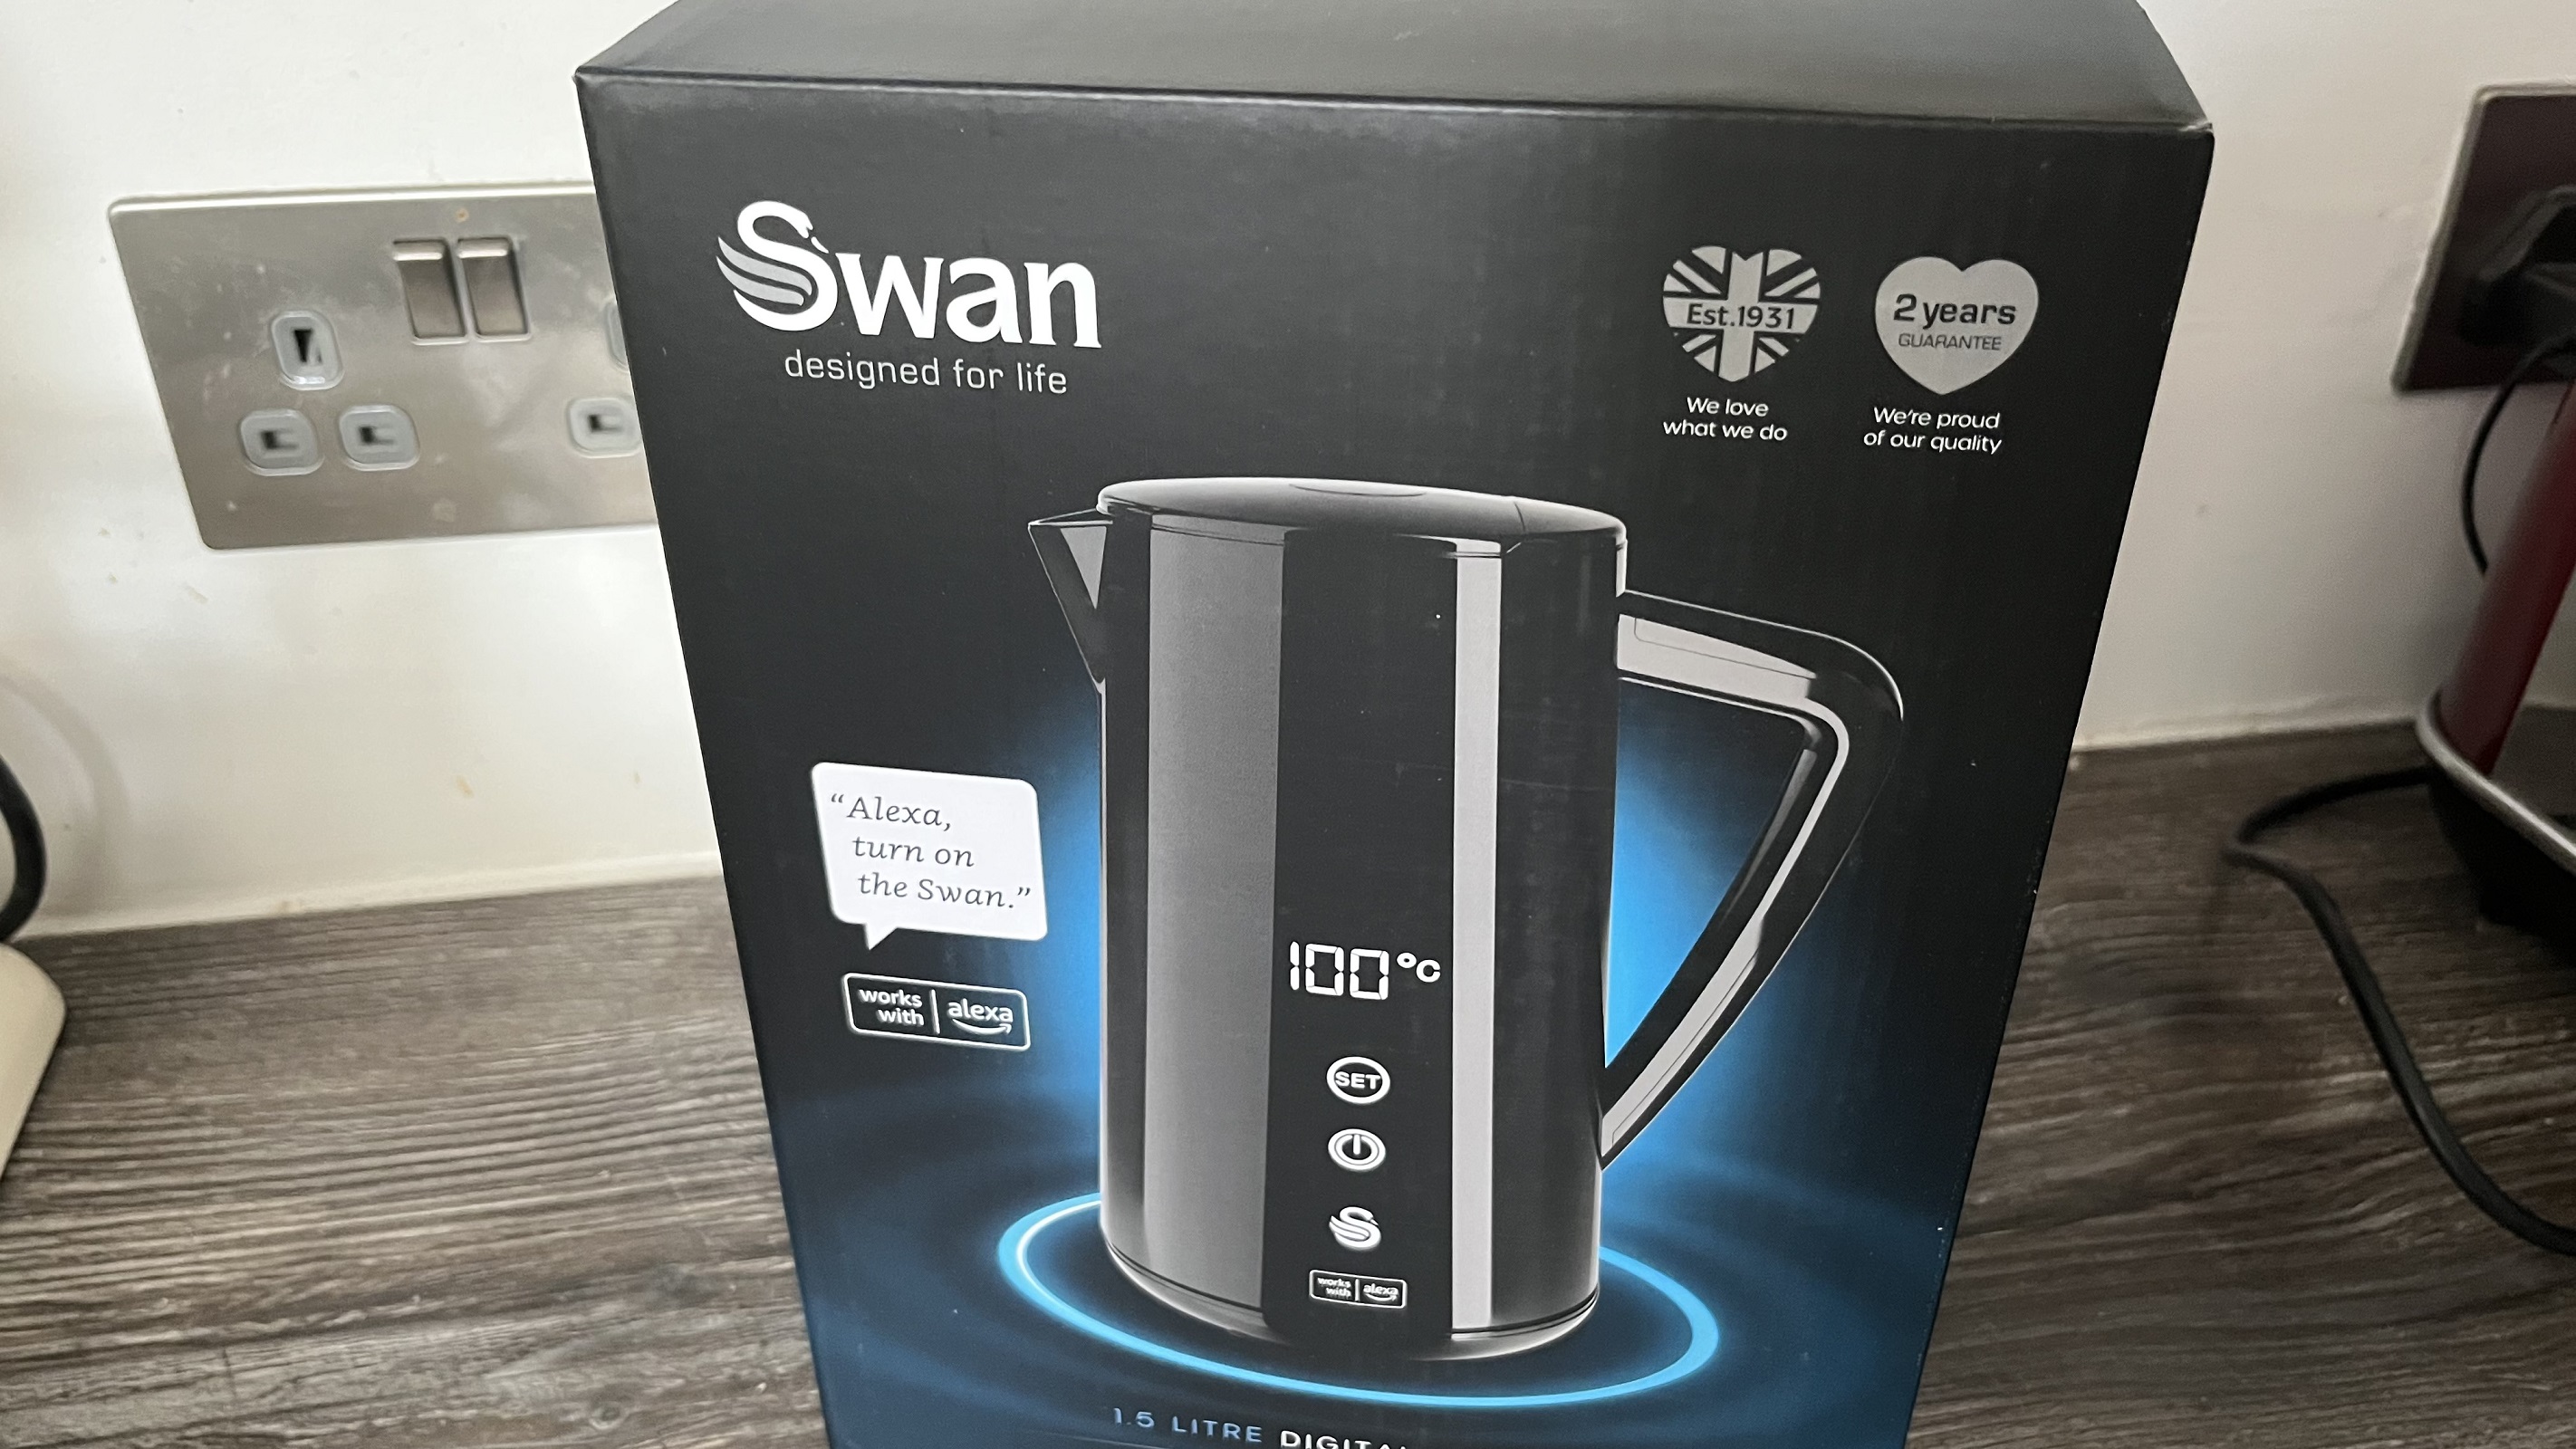 Swan Alexa 1.5 Litre Smart Kettle in box